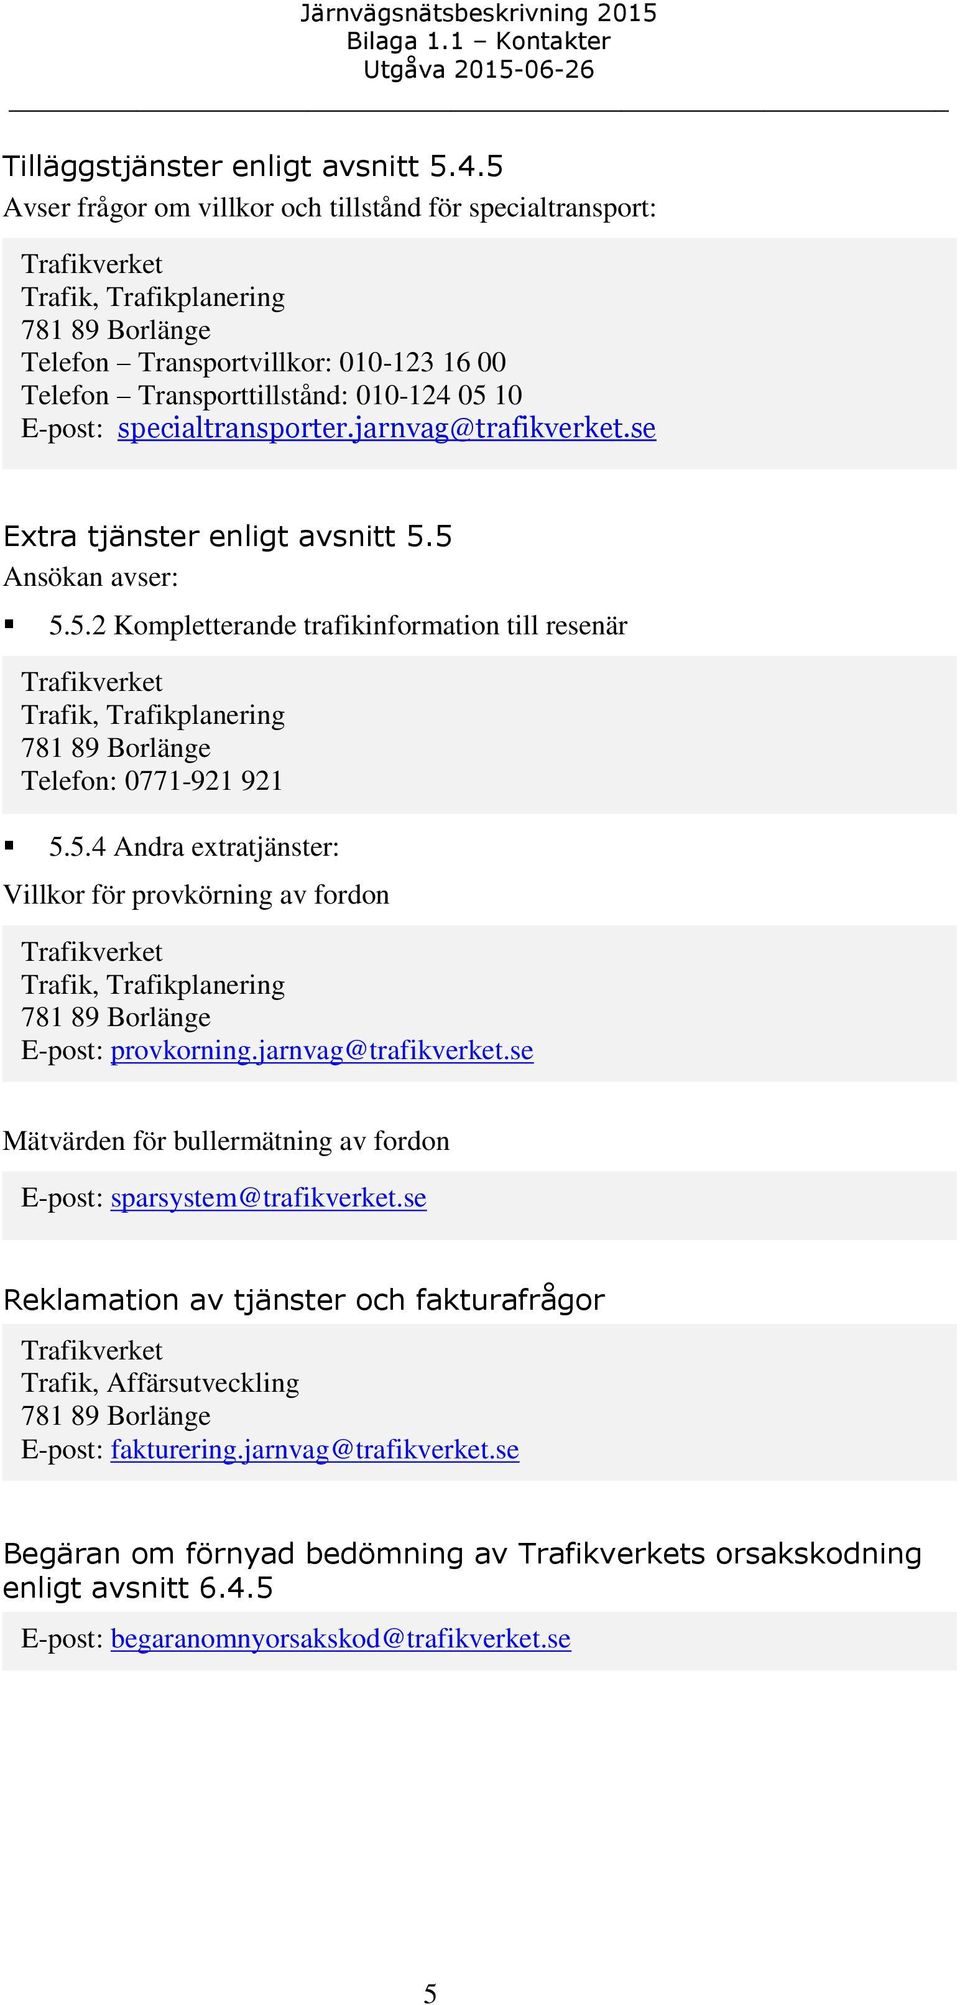 jarnvag@trafikverket.se Extra tjänster enligt avsnitt 5.5 Ansökan avser: 5.5.2 Kompletterande trafikinformation till resenär 5.5.4 Andra extratjänster: Villkor för provkörning av fordon E-post: provkorning.